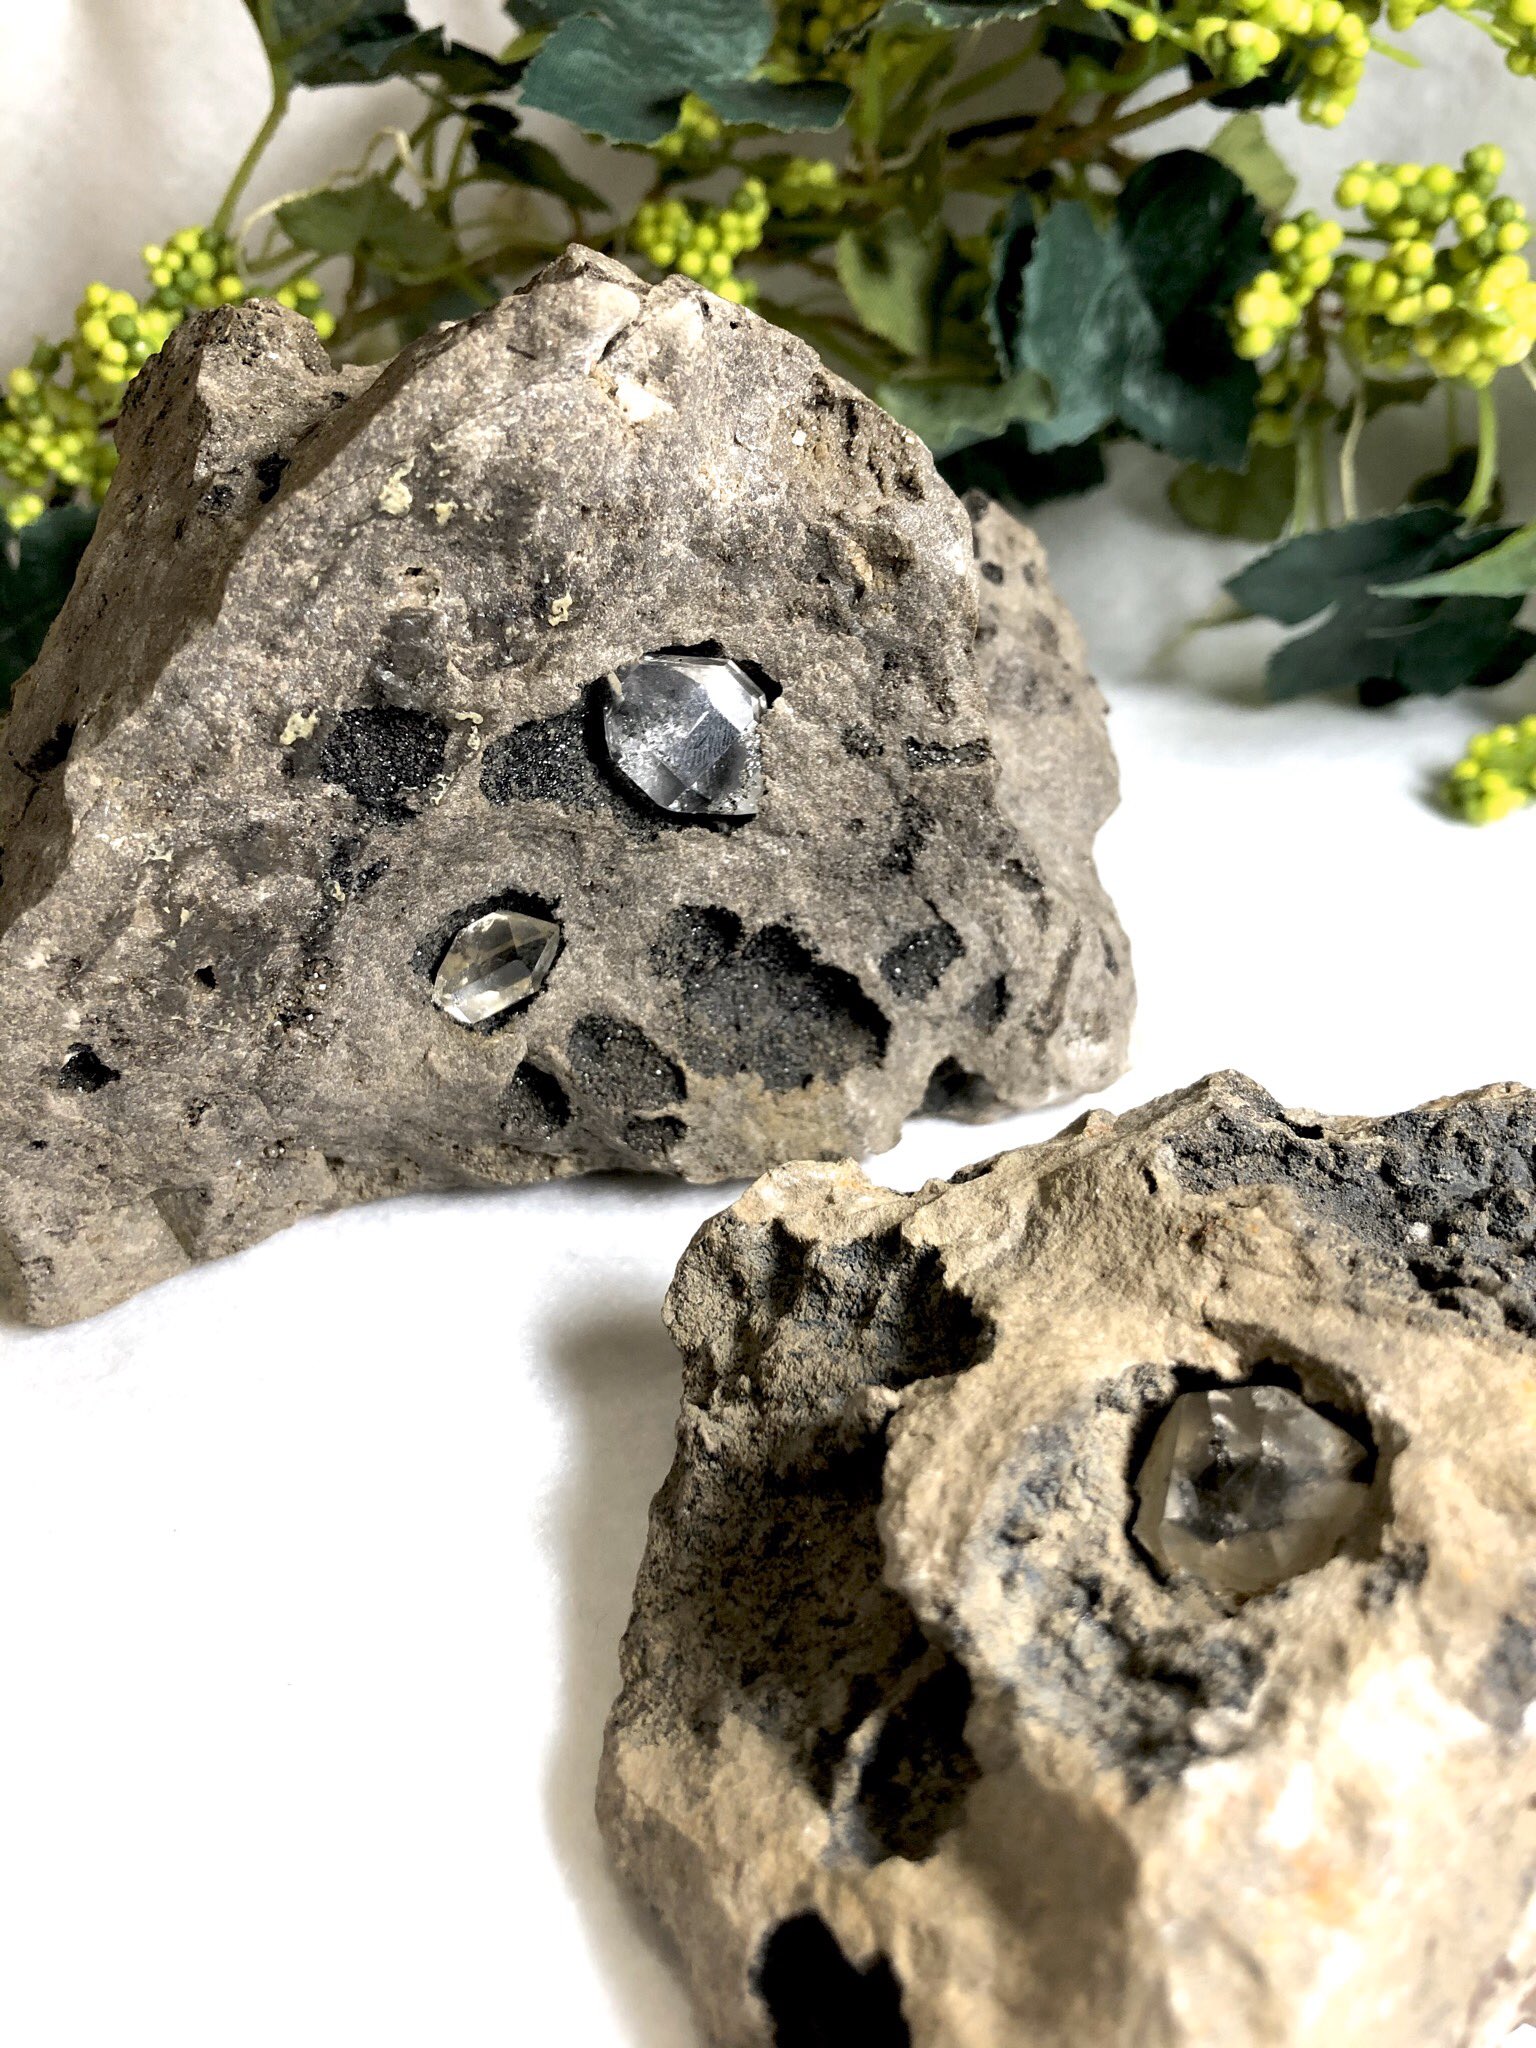 ペトラ ハーキマー水晶の 母岩付き原石です ハーキマーダイヤモンドとも 呼ばれる ニューヨークハーキマーで 産出される 名前の通り ダイヤモンドのように 綺麗な水晶です ハーキマー水晶 ハーキマーダイヤモンド 天然石アクセサリー 天然石